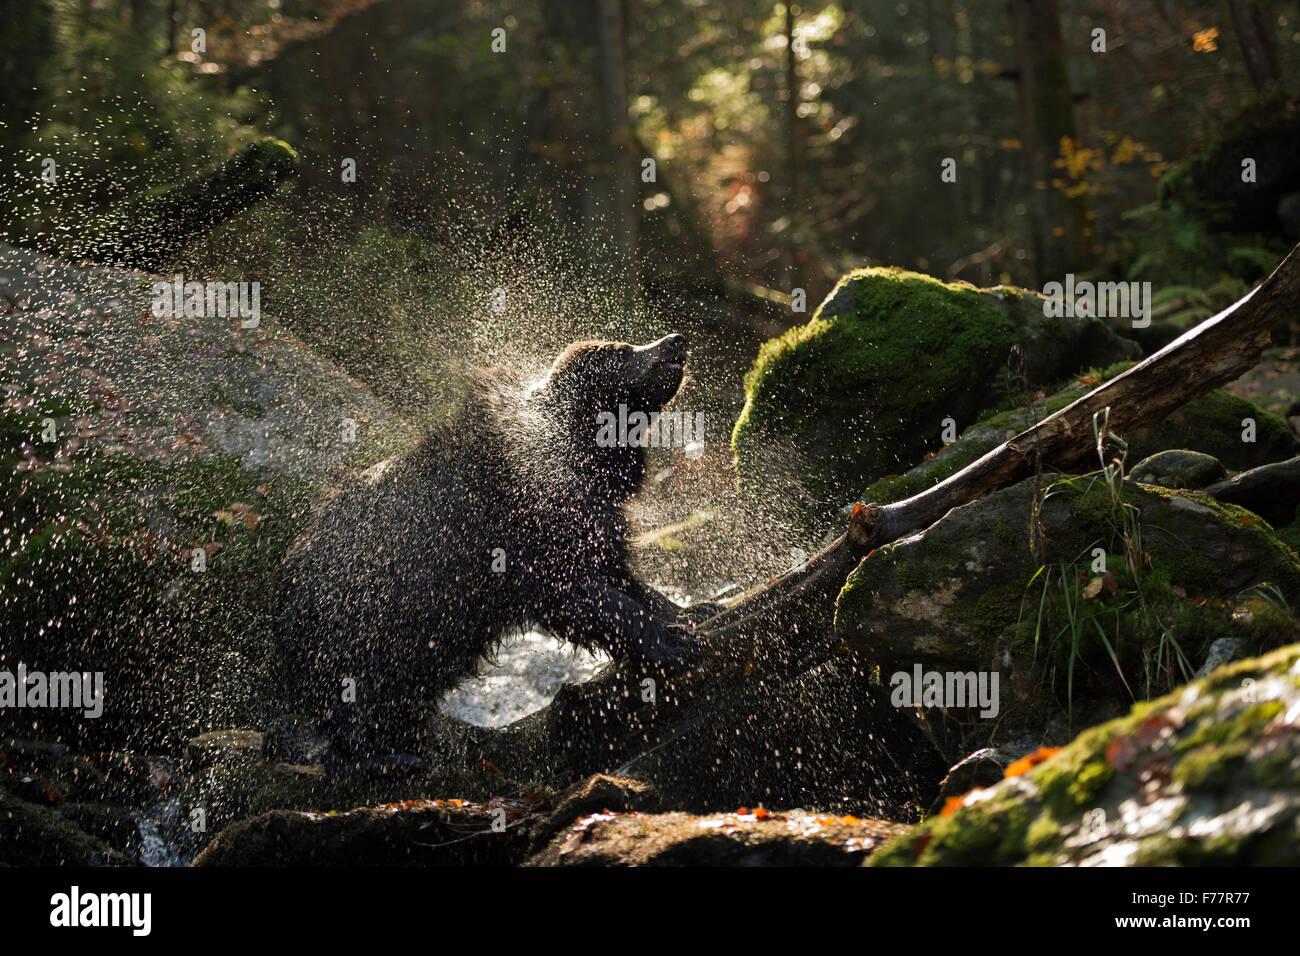 Ours brun européen / Braunbaer ( Ursus arctos ) se tient sur un tronc d'arbre dans un ruisseau Sauvage, secouant sa peau. Banque D'Images